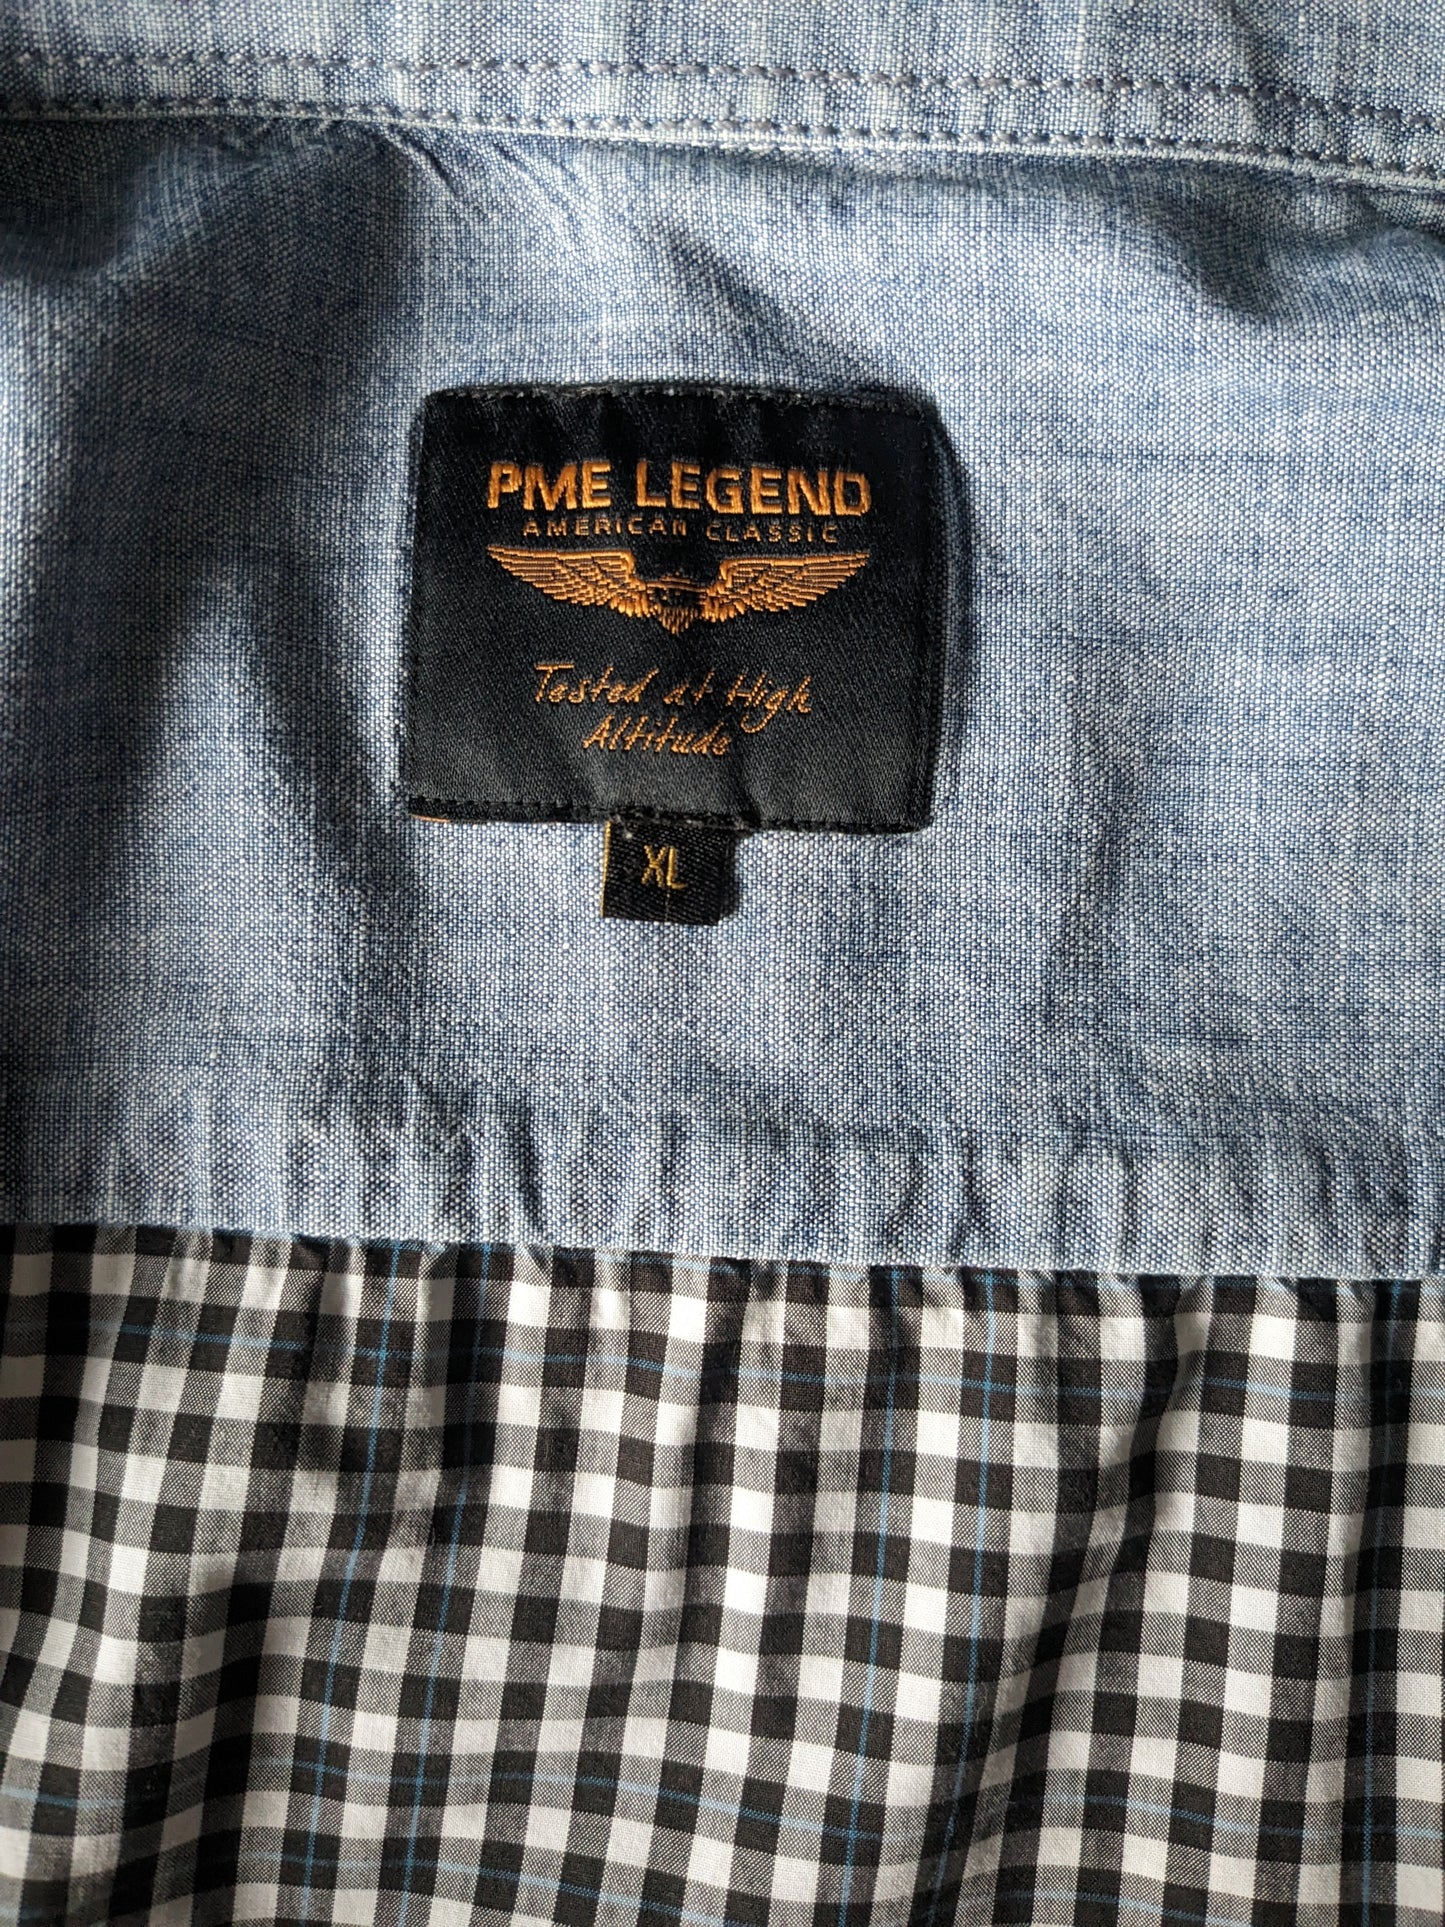 Camisa de leyenda de PME. Blanco y negro bloqueado con línea azul y costuras. Tamaño xl.